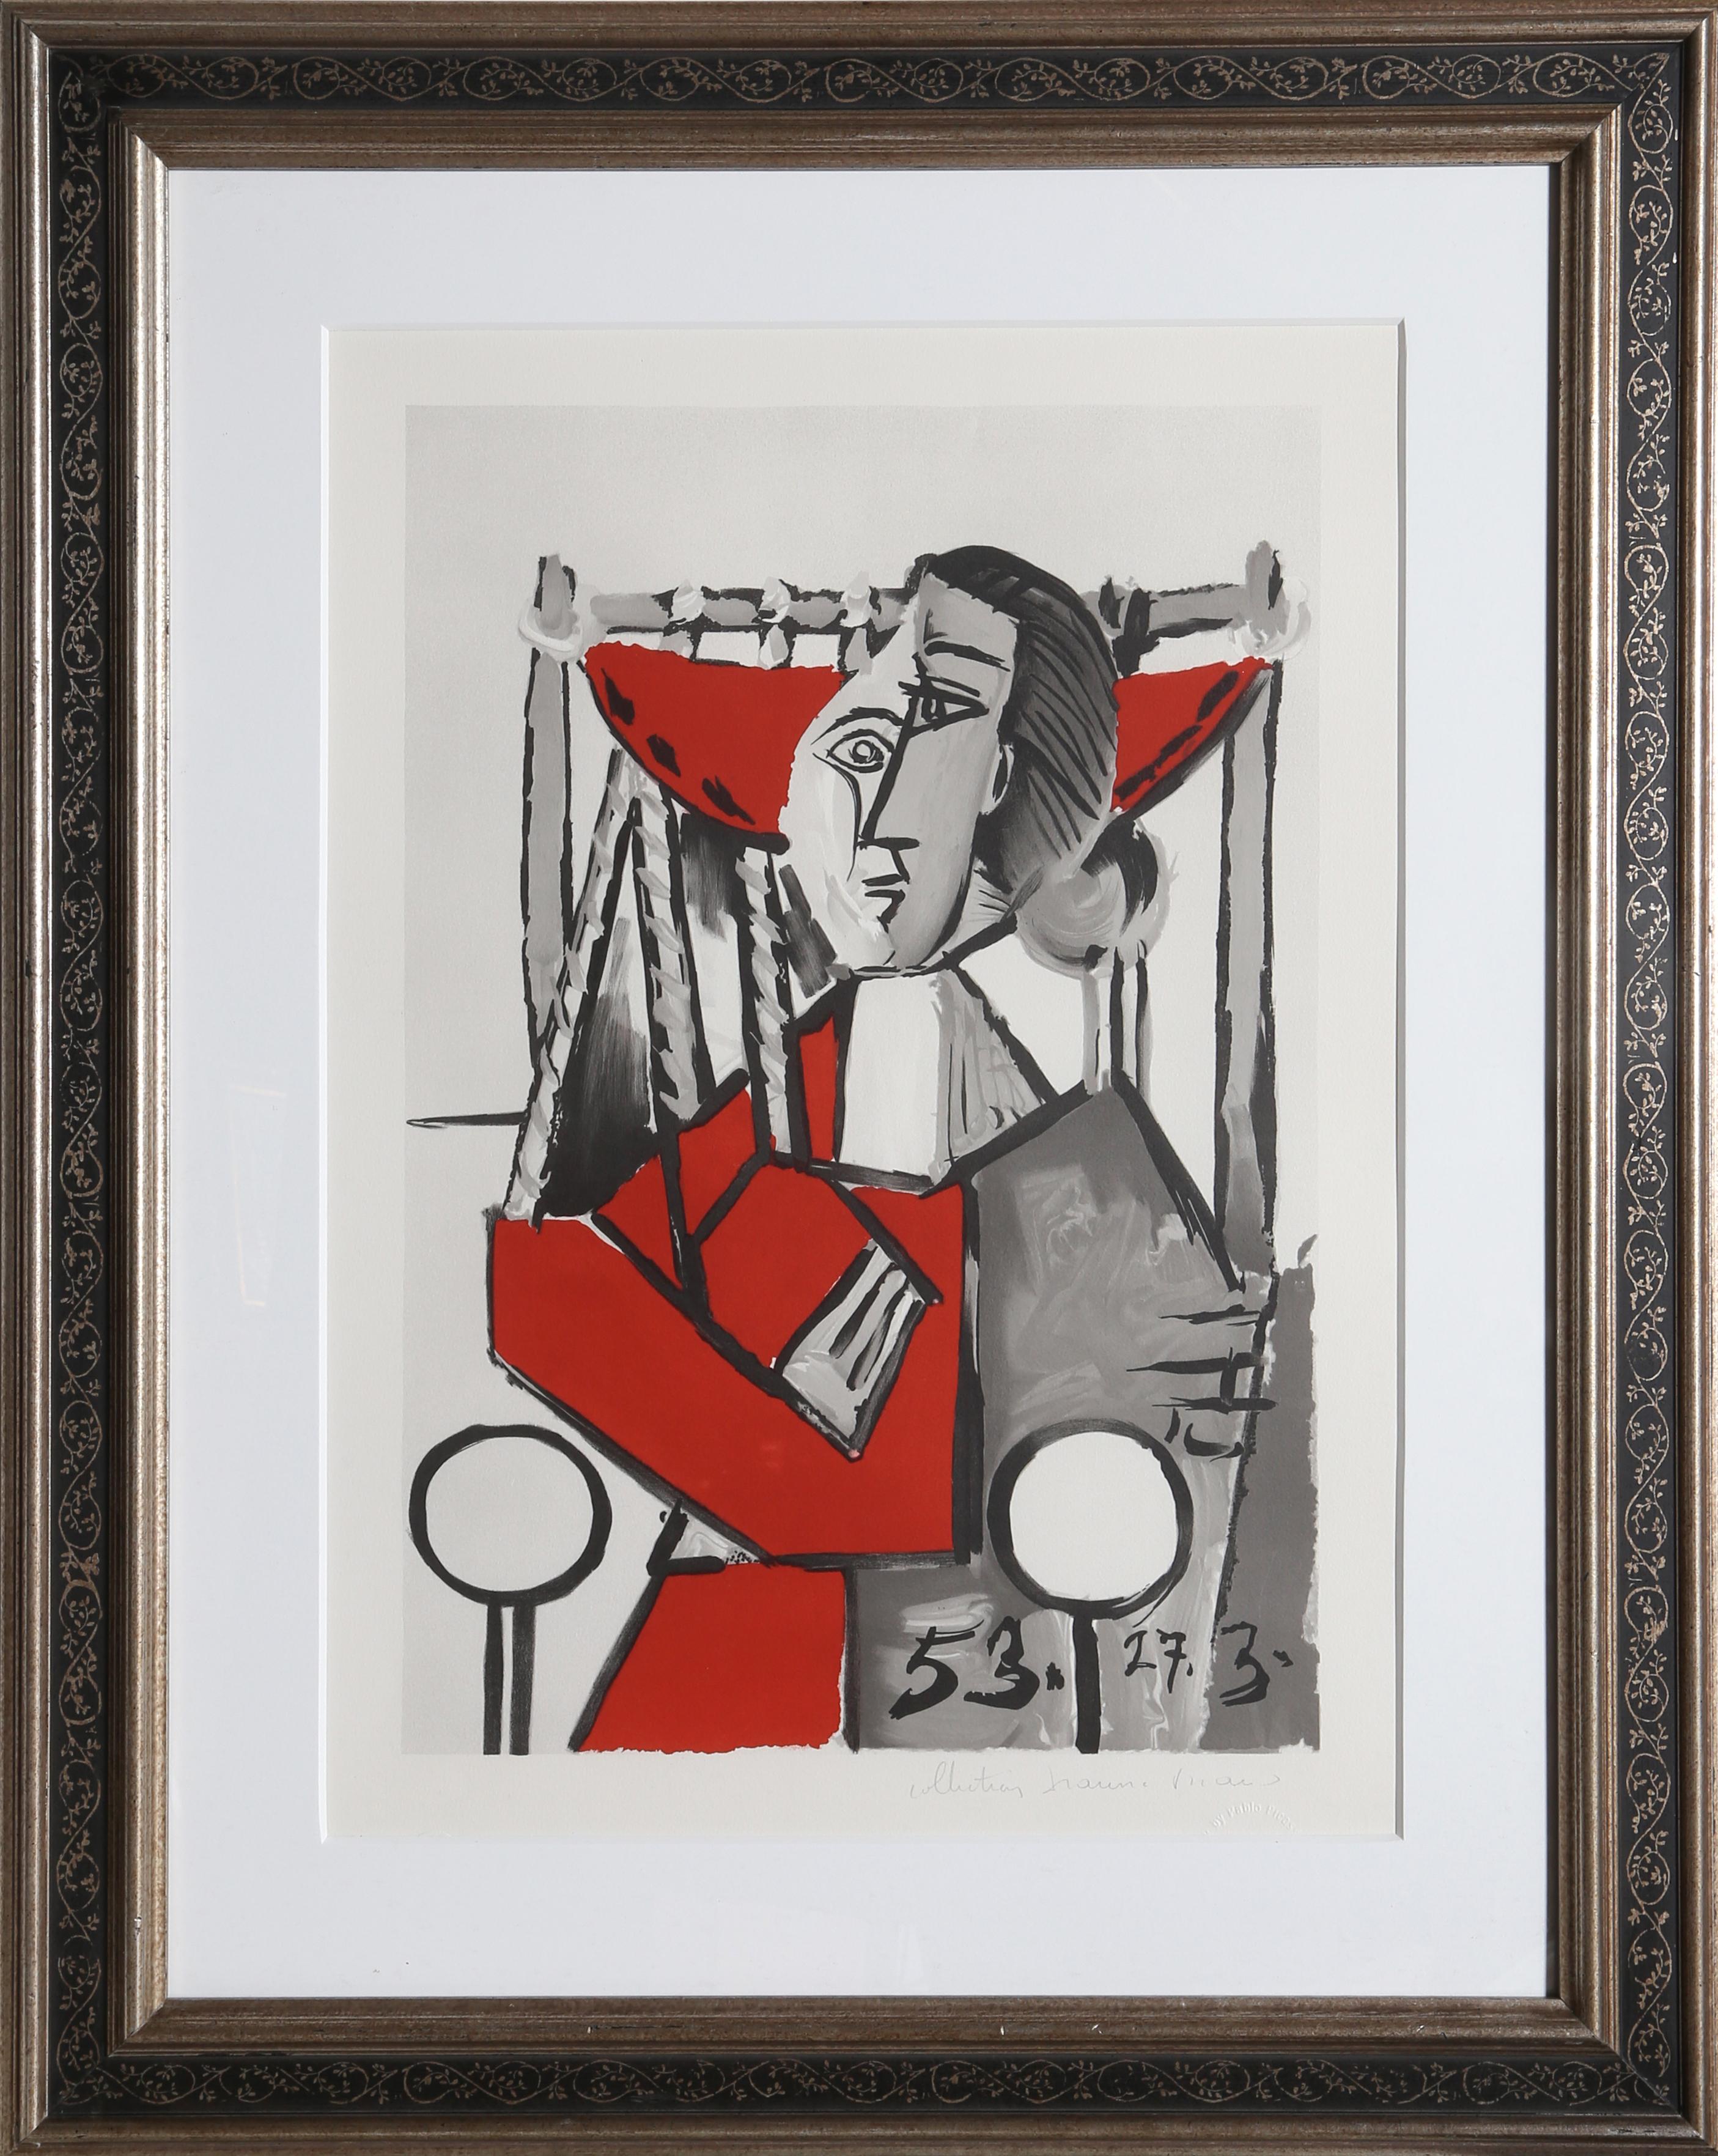 Pablo Picassos Darstellung einer Frau in einem Sessel ist ein klassisches Beispiel für seinen avantgardistischen kubistischen Stil. Die Figur der Frau, die aus einer Reihe von kantigen Formen und dicken Linien besteht, erscheint fragmentiert und auf